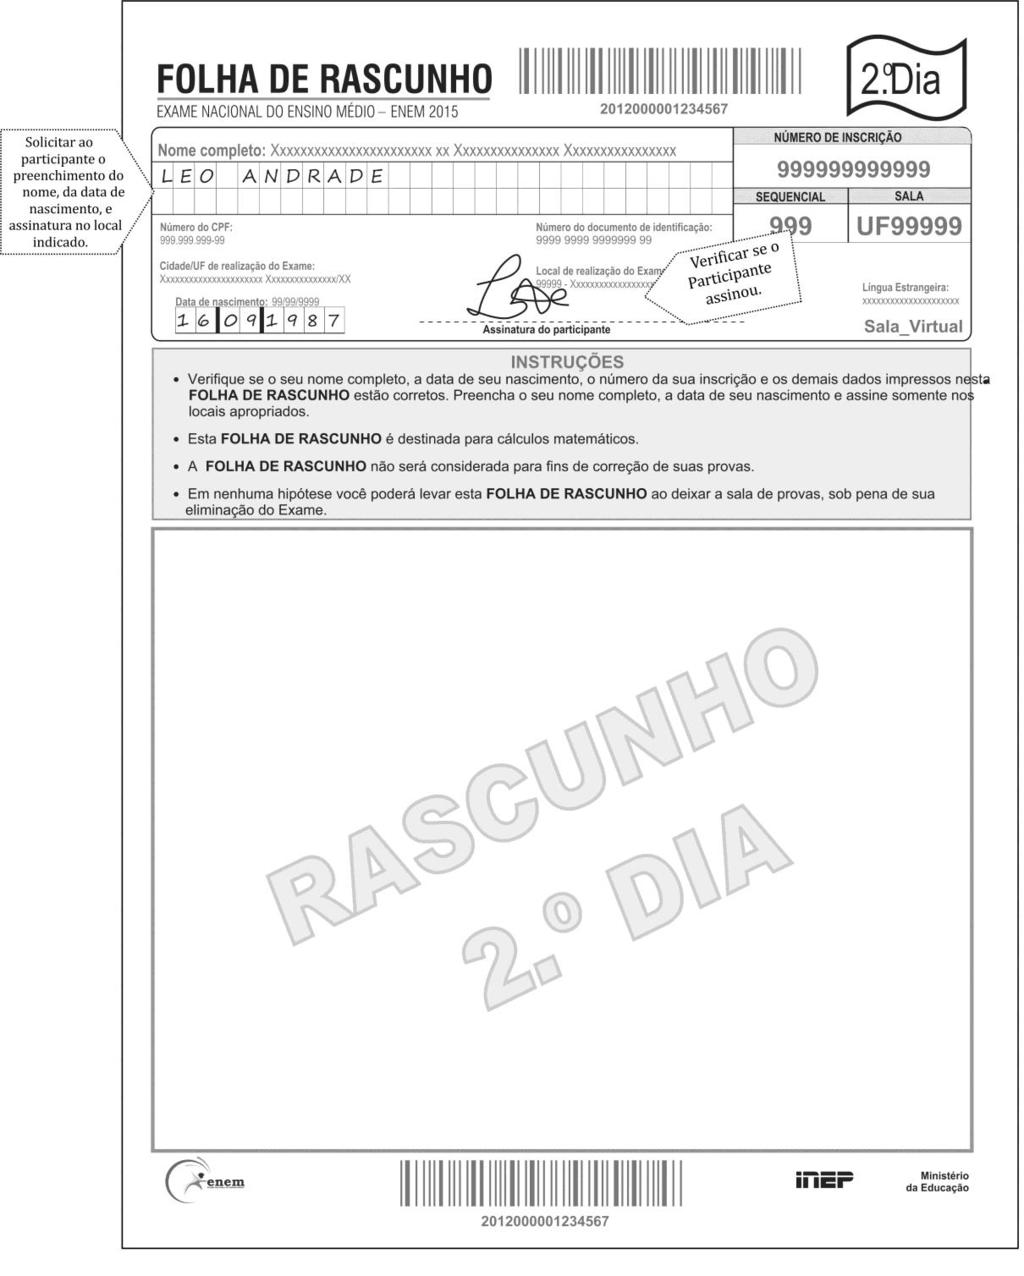 Folha de Rascunho, somente para o 2º dia de aplicação: Folha no formato A4 com a marca d água RASCUNHO.